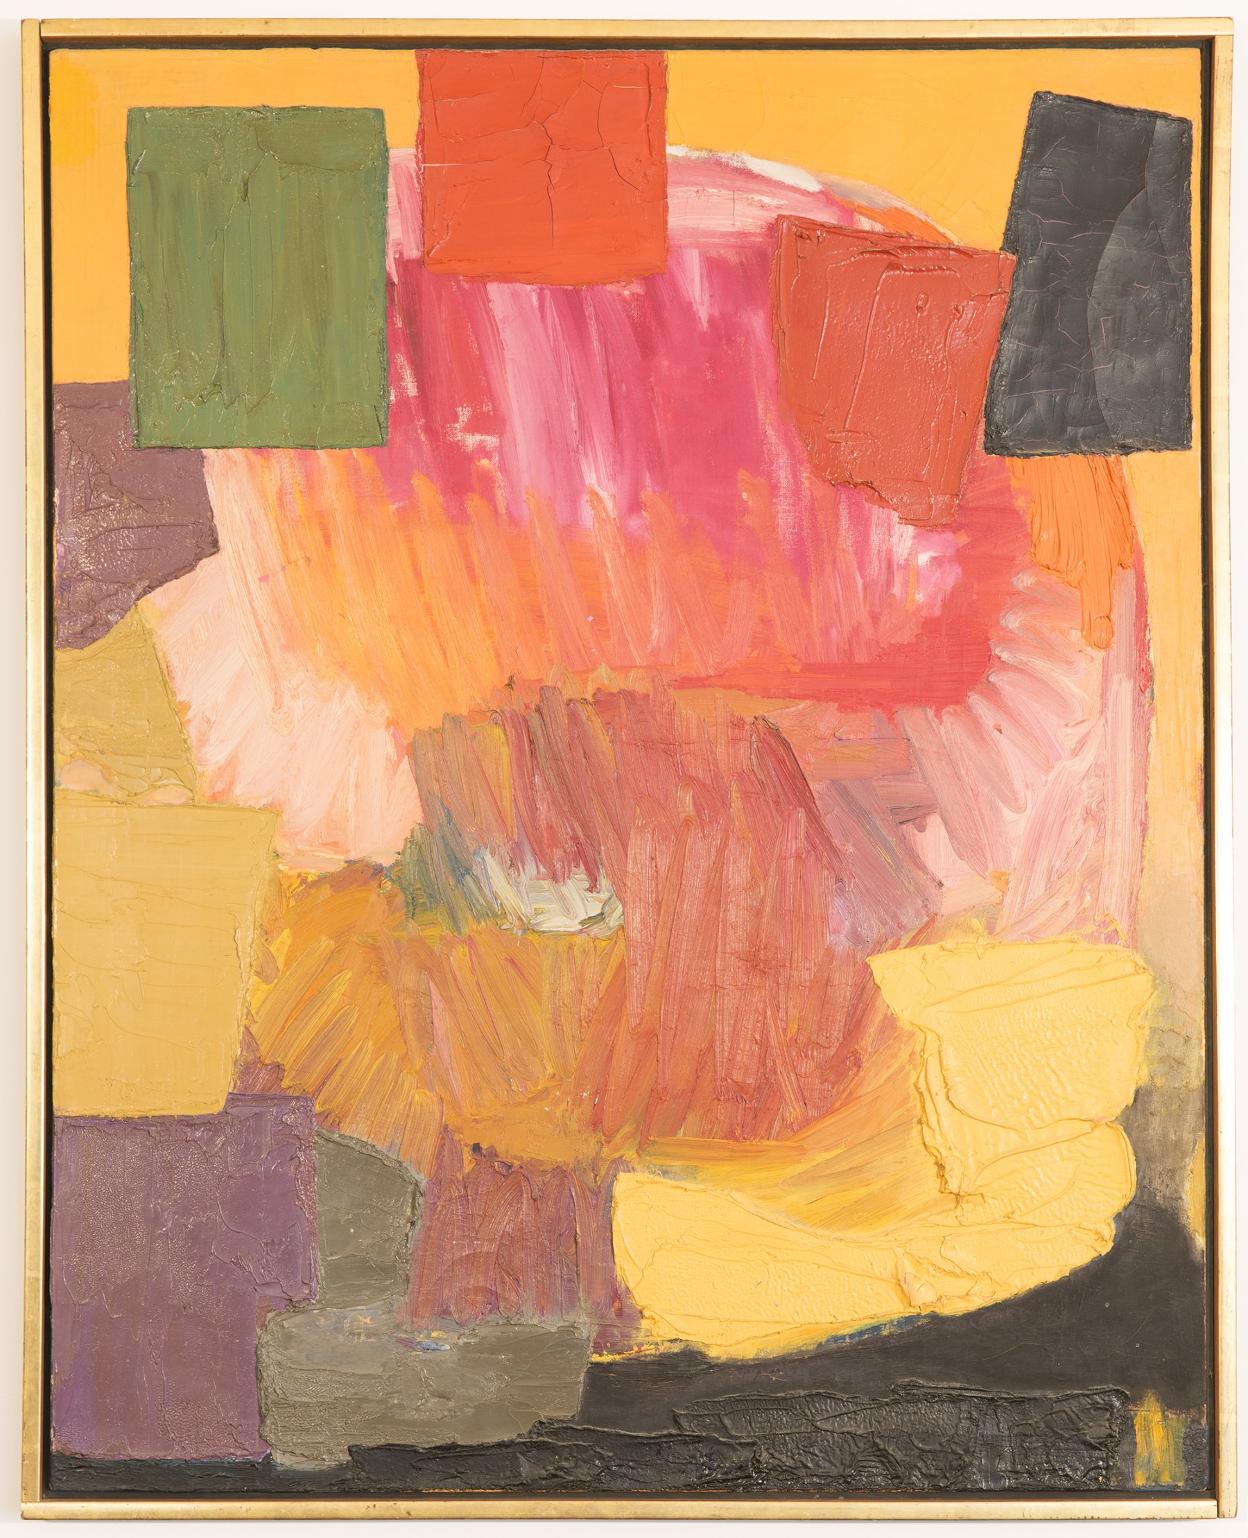 Amour, 1958-59. Óleo sobre lienzo. Colección privada (Nueva York).